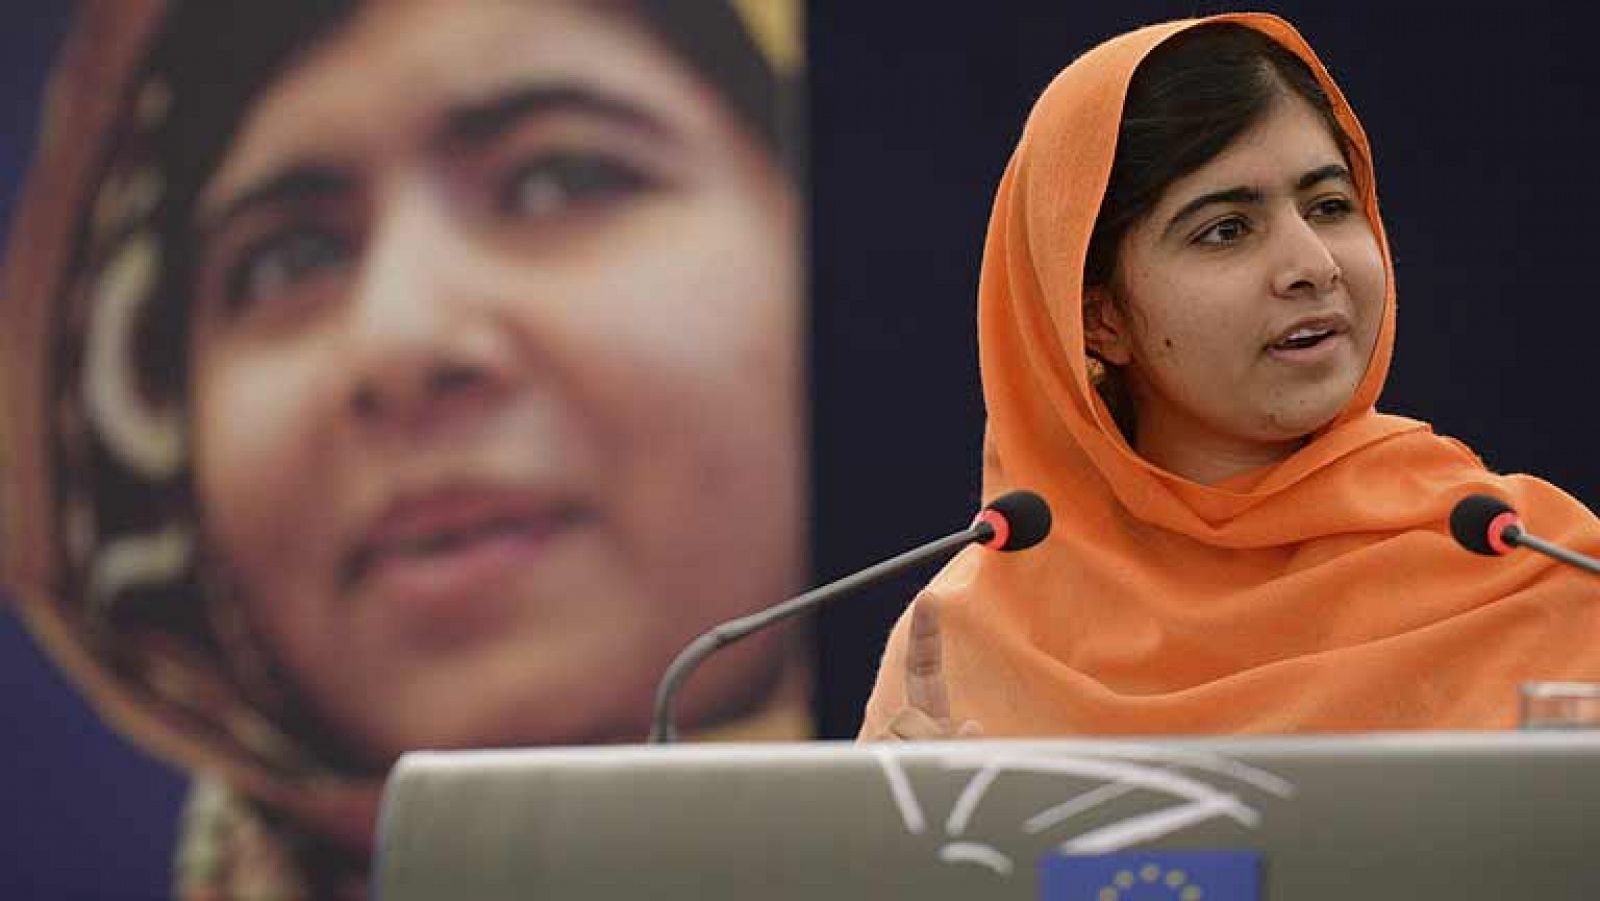  "Algunos niños no quieren consolas, quieren un libro y un bolígrafo para ir al colegio", dijo hoy al recoger su premio Sájarov con tan solo 16 años Malala Yousafzai